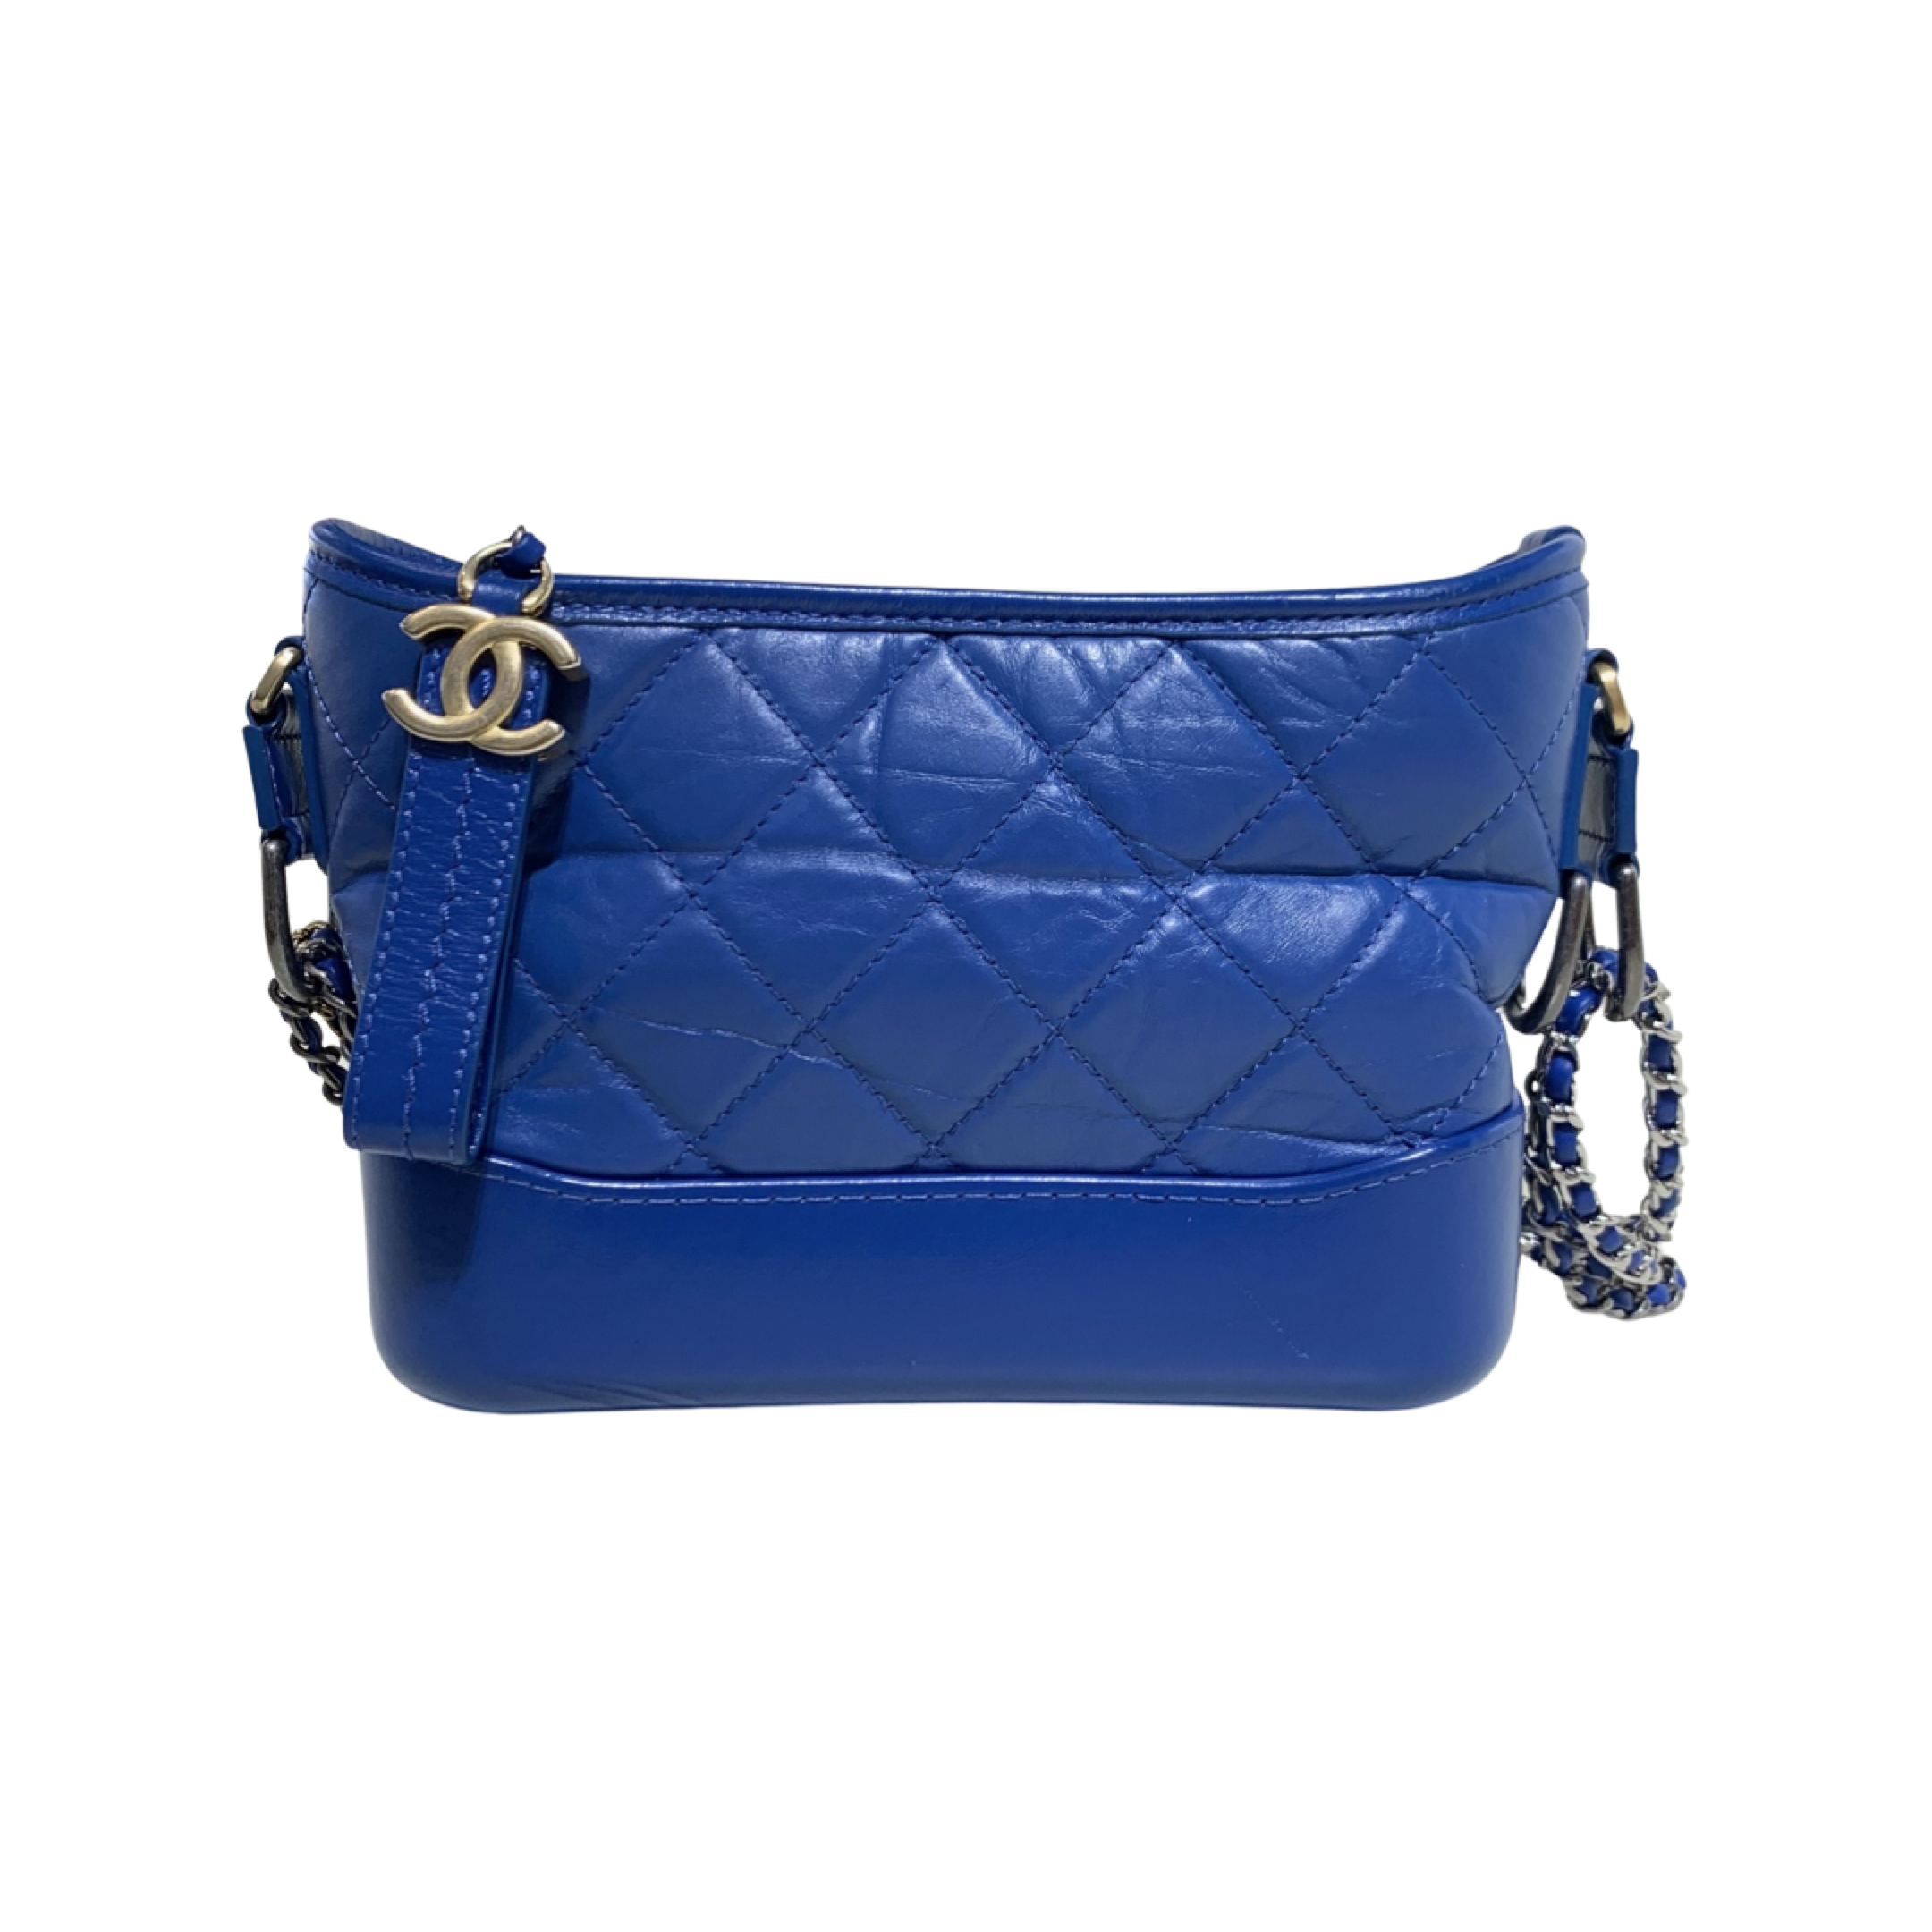 Chanel Gabrielle Blue Small Bag